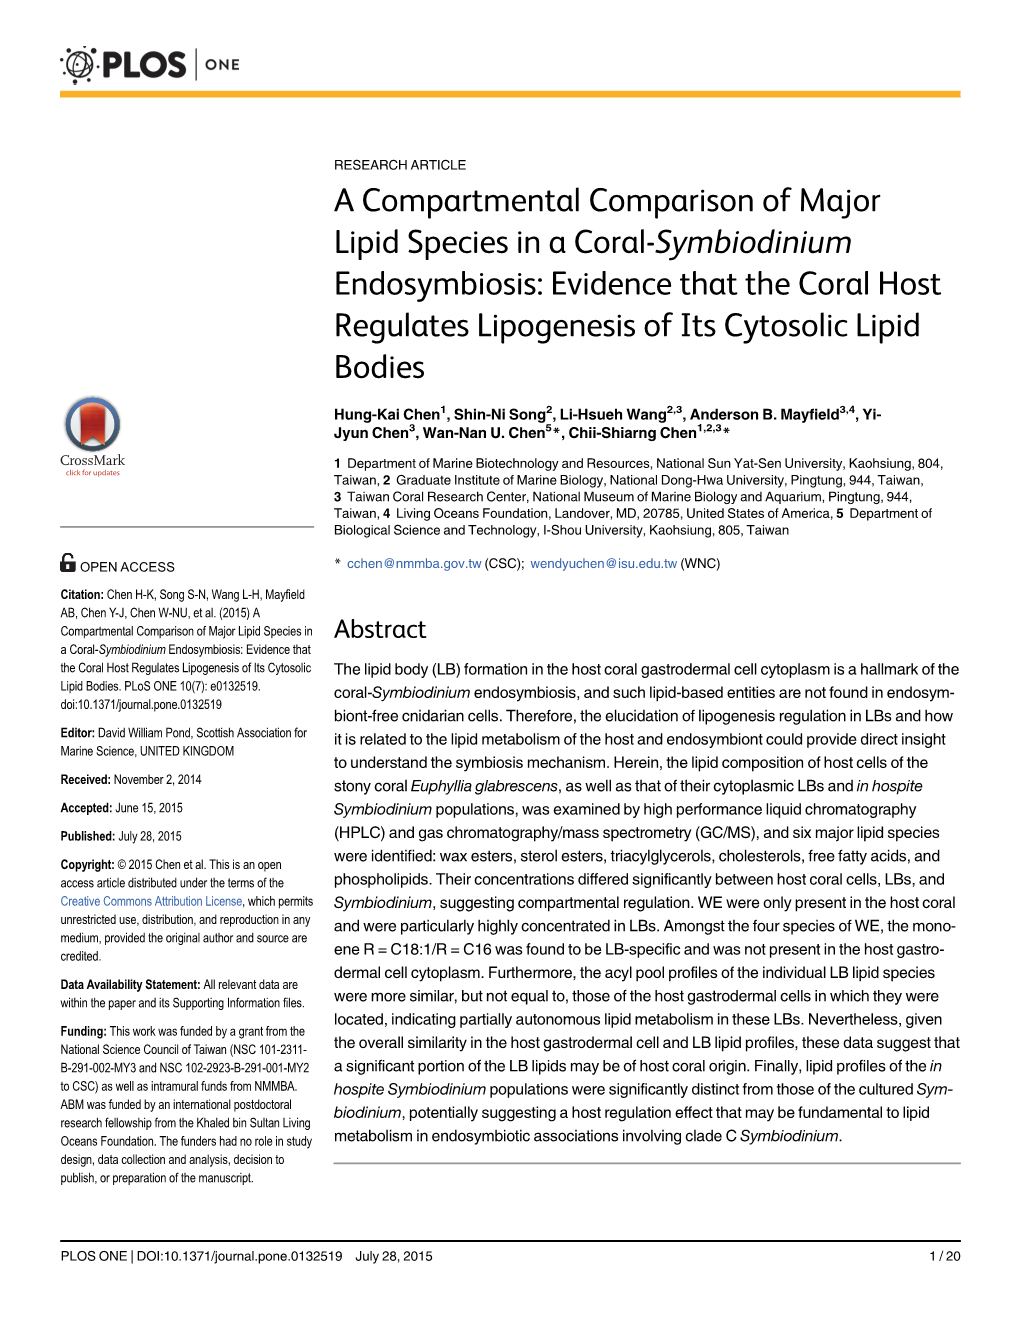 A Compartmental Comparison of Major Lipid